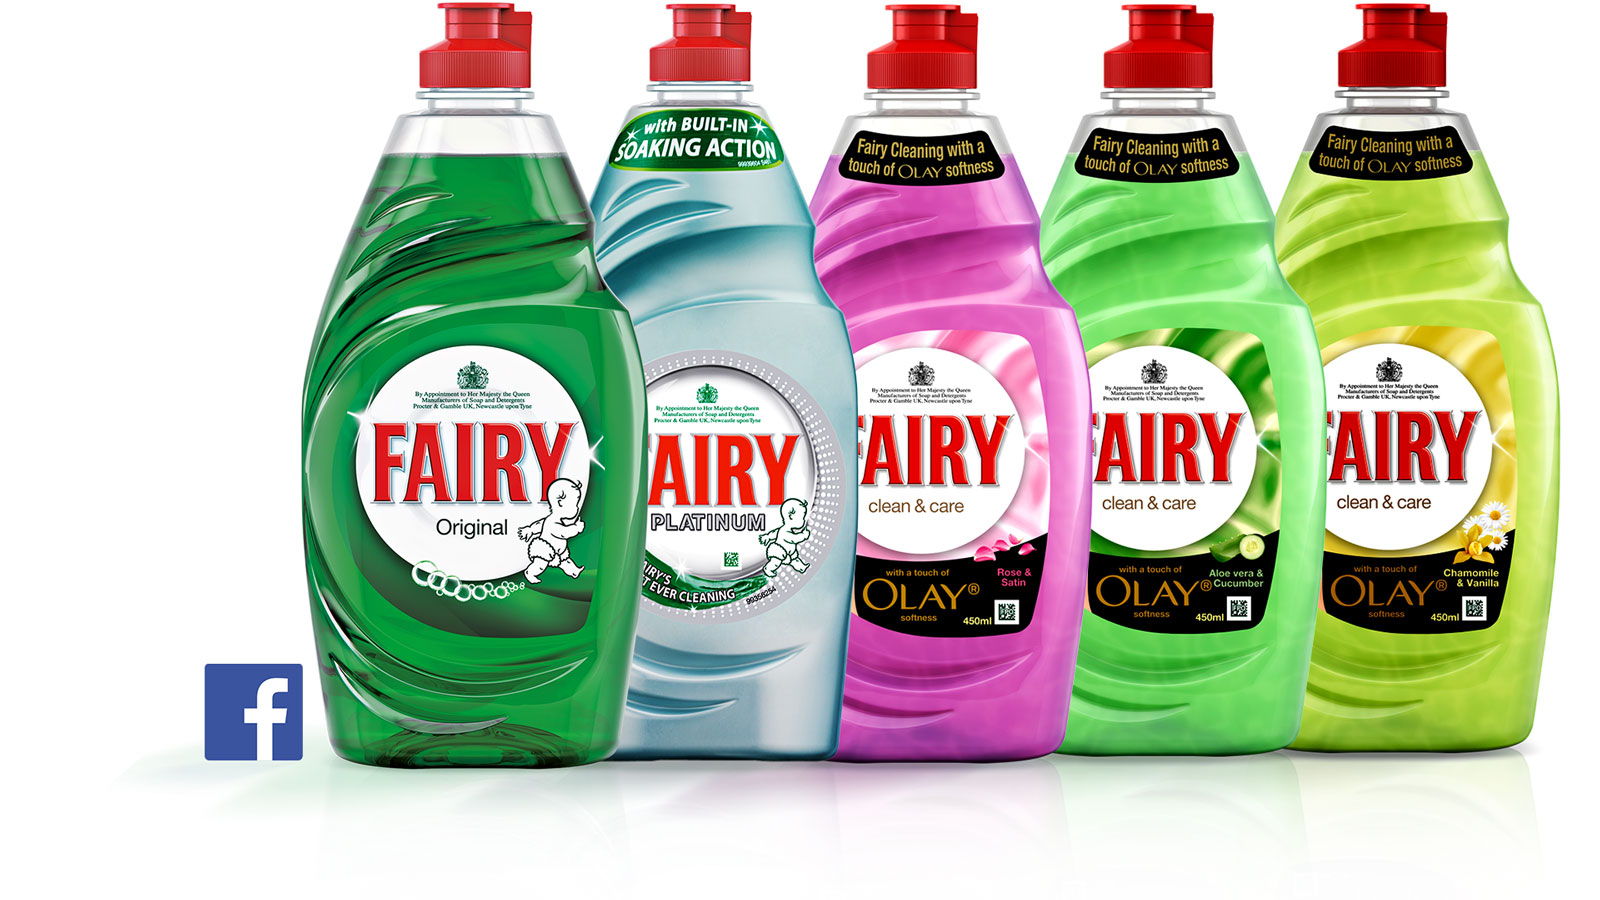 Fairy bottles